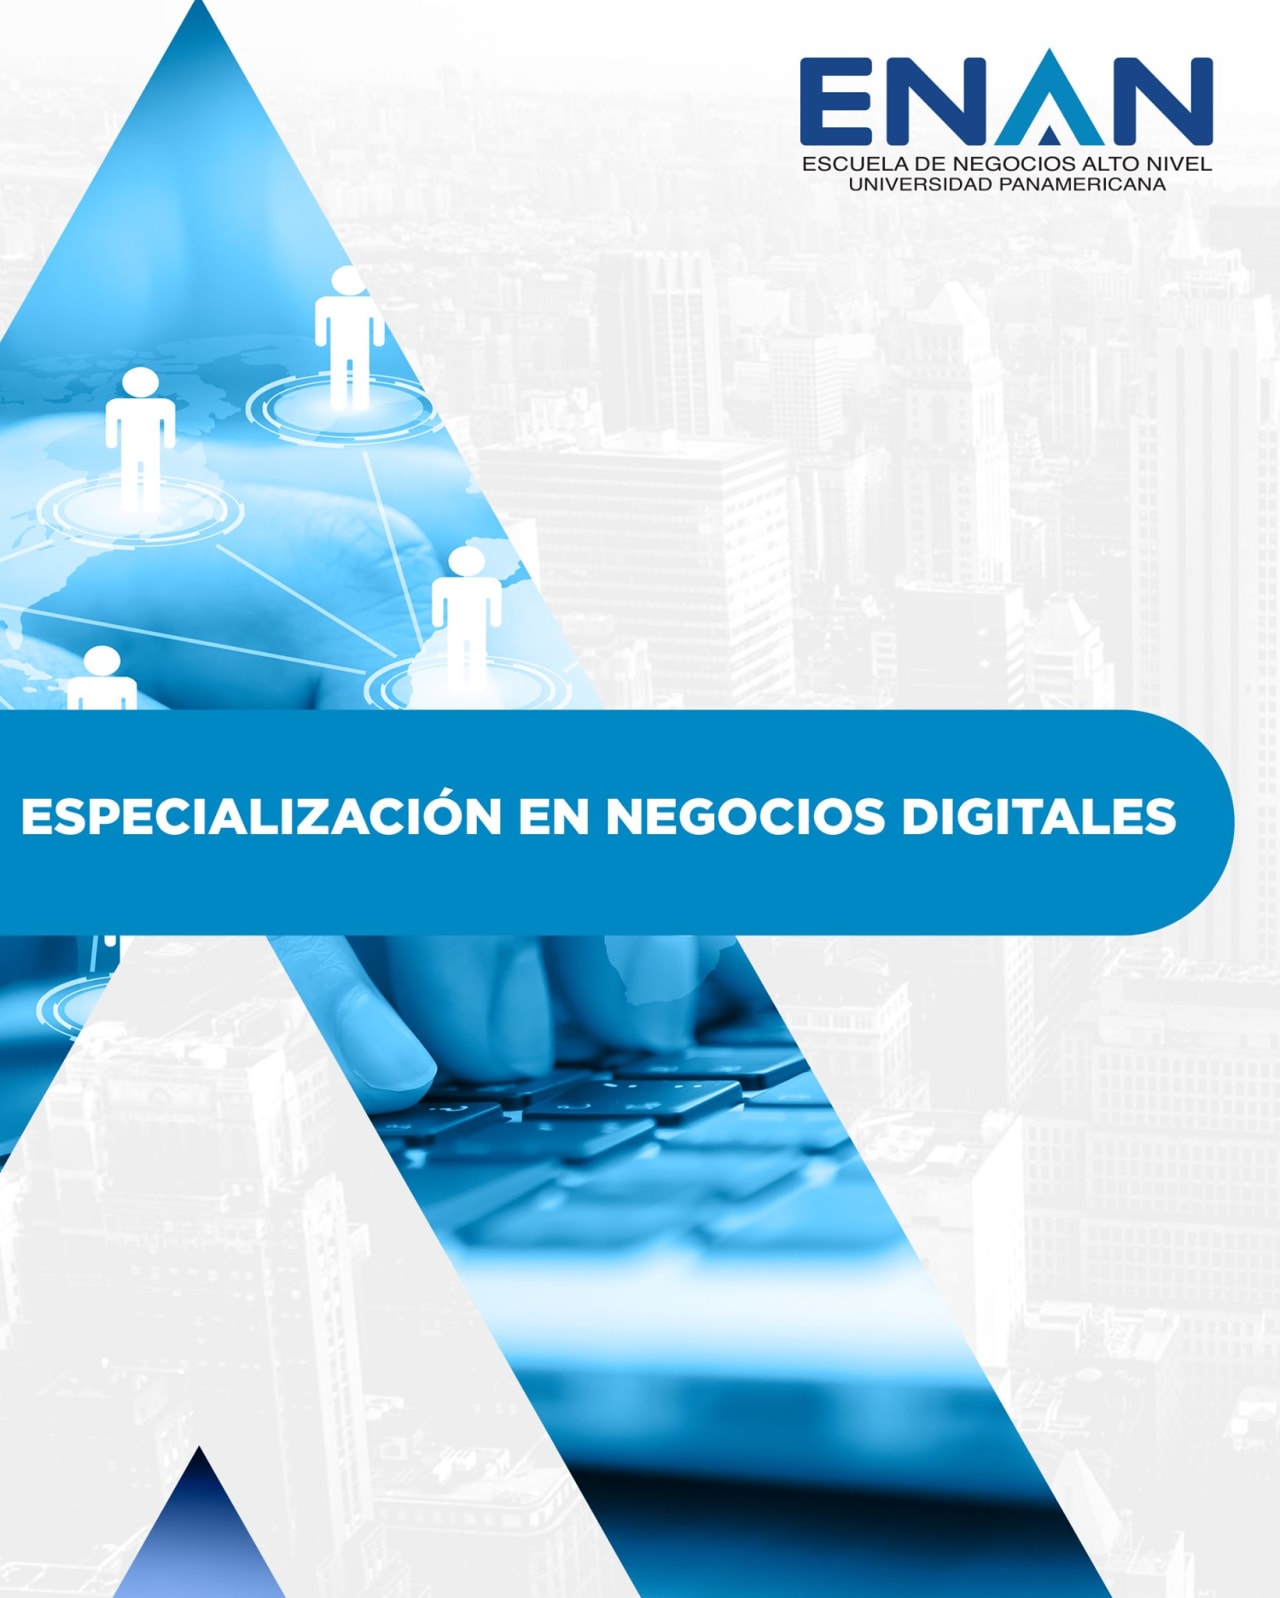 Escuela de Negocios Alto Nivel - Universidad Panamericana de Guatemala Digital affärspecialisering